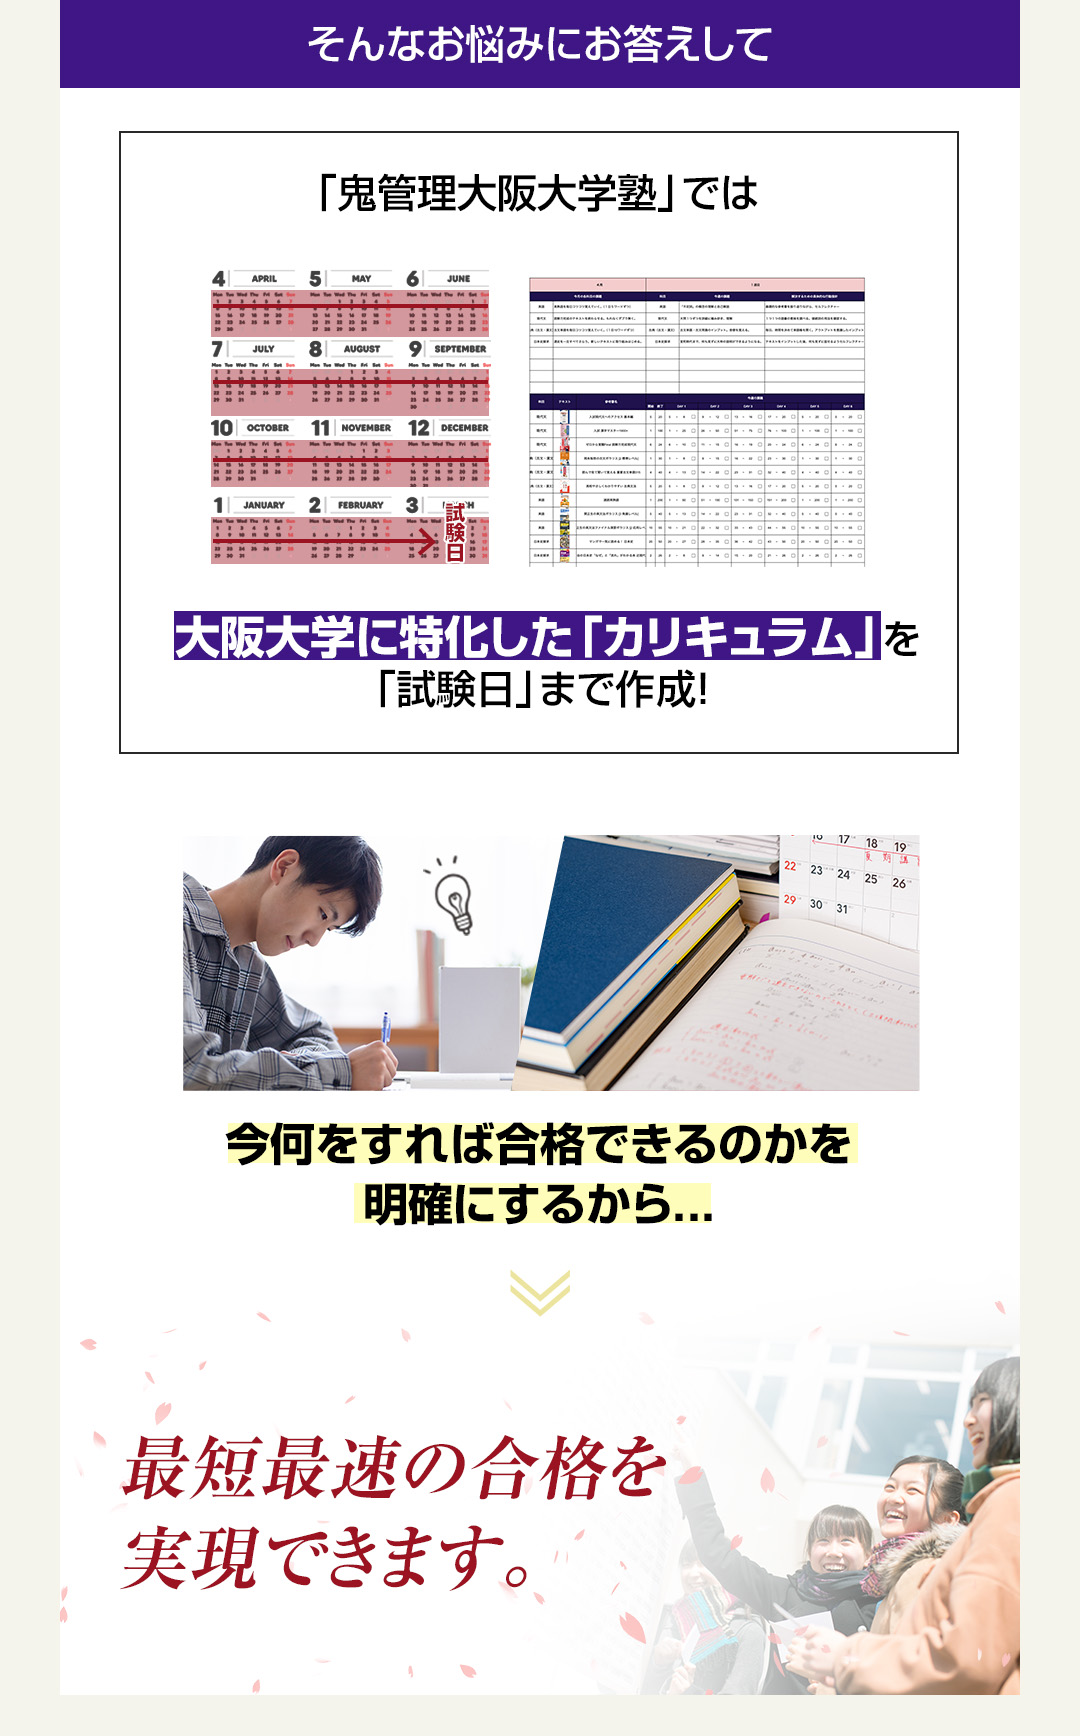 「鬼管理大阪大学塾」では大阪大学に特化した「カリキュラム」を「試験日」まで作成